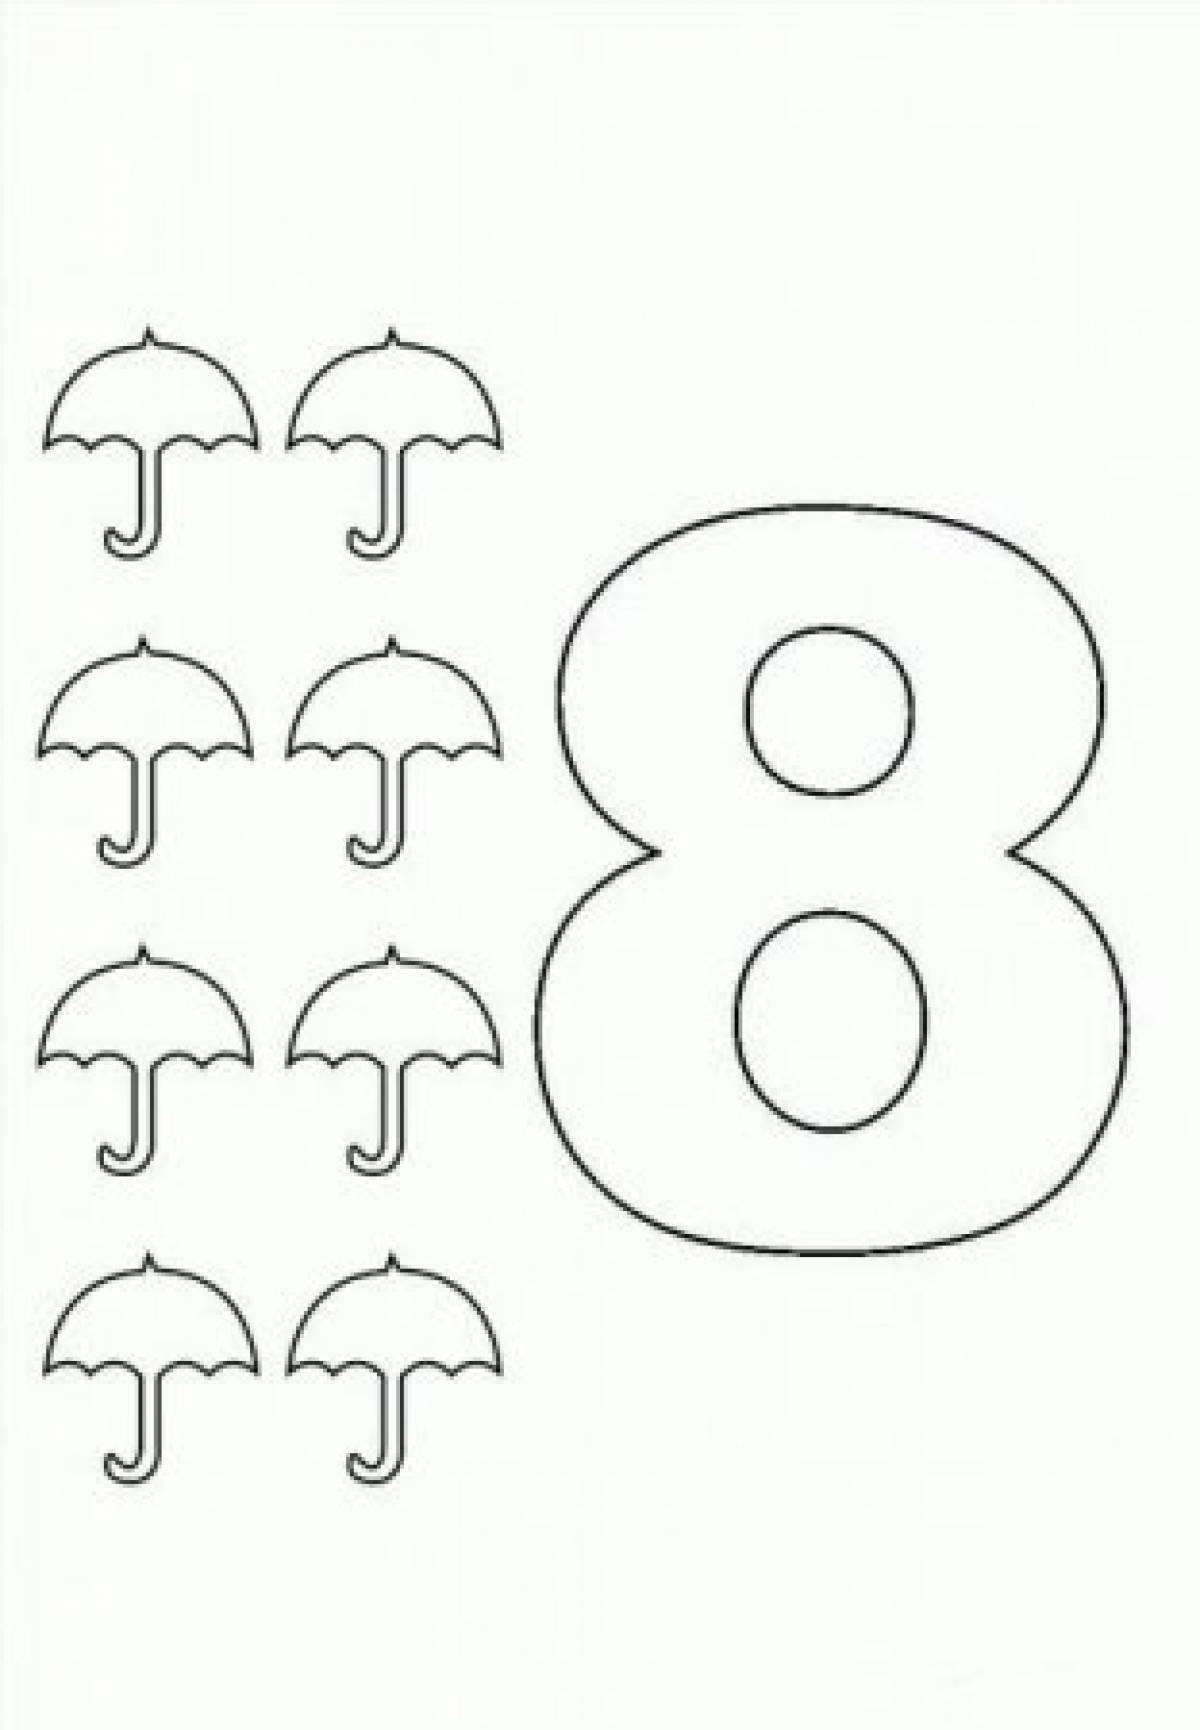 Eight umbrellas